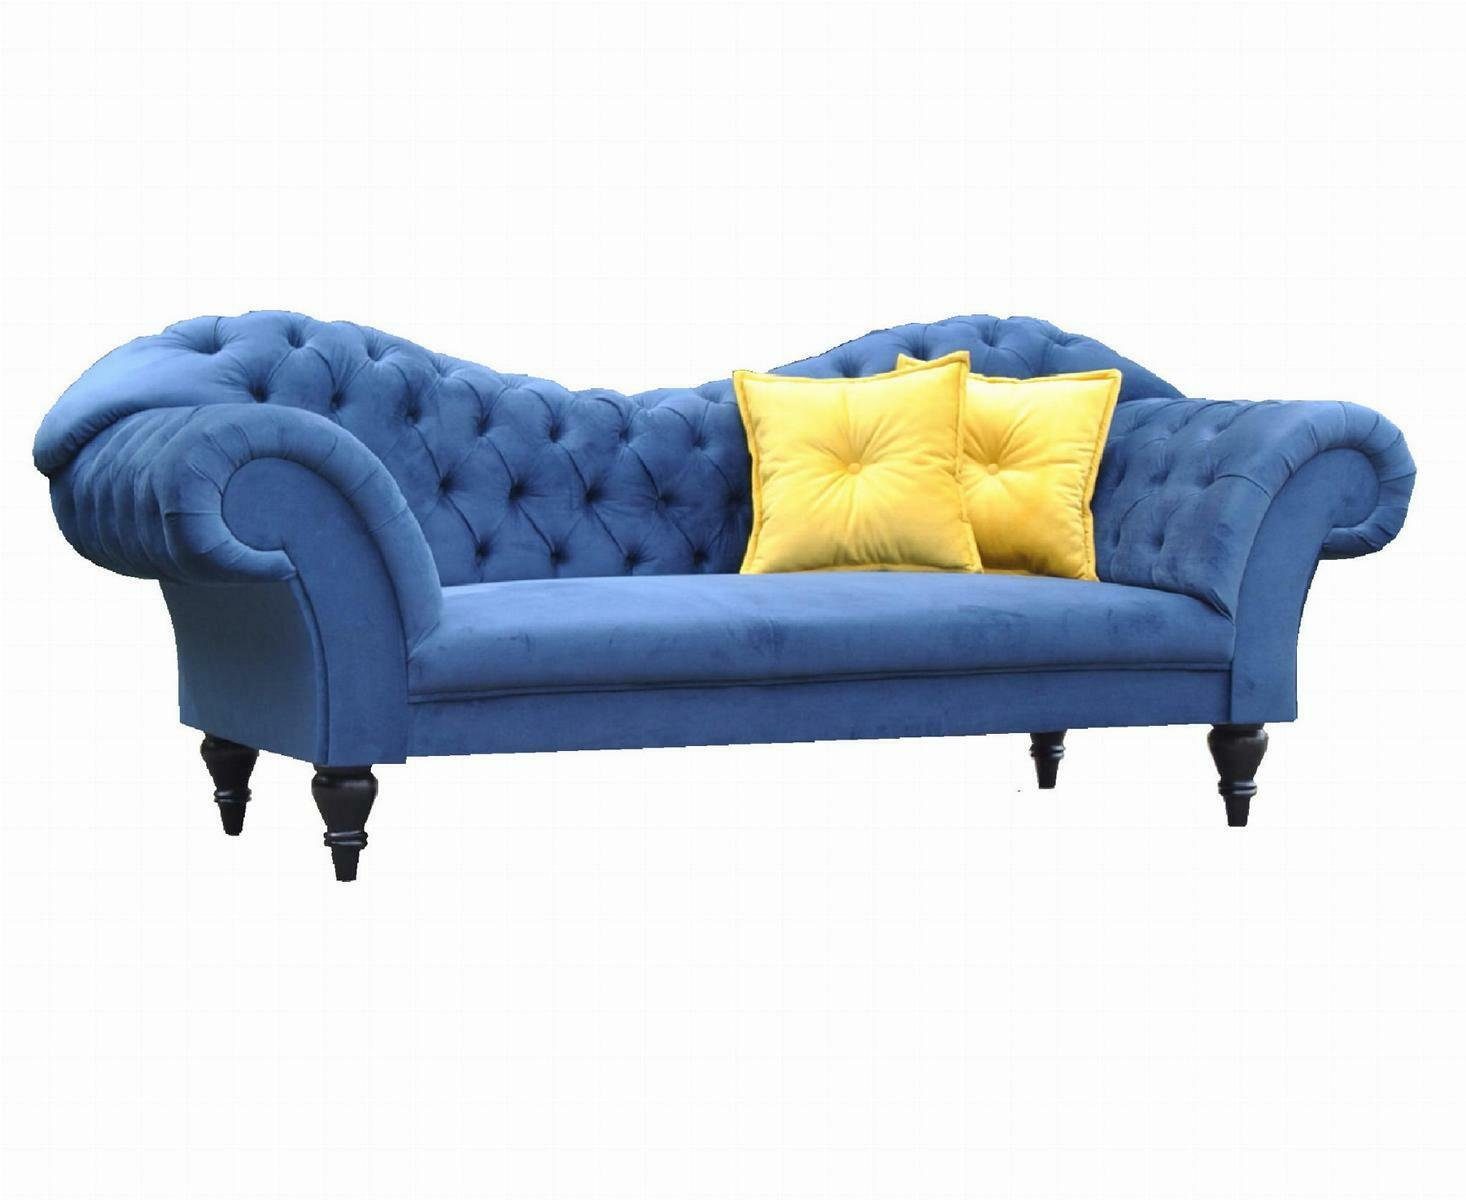 JVmoebel 3-Sitzer Chesterfield Dreisitzer Design in Textil Sitzer, Sitzer 3 Made Sofa Europe